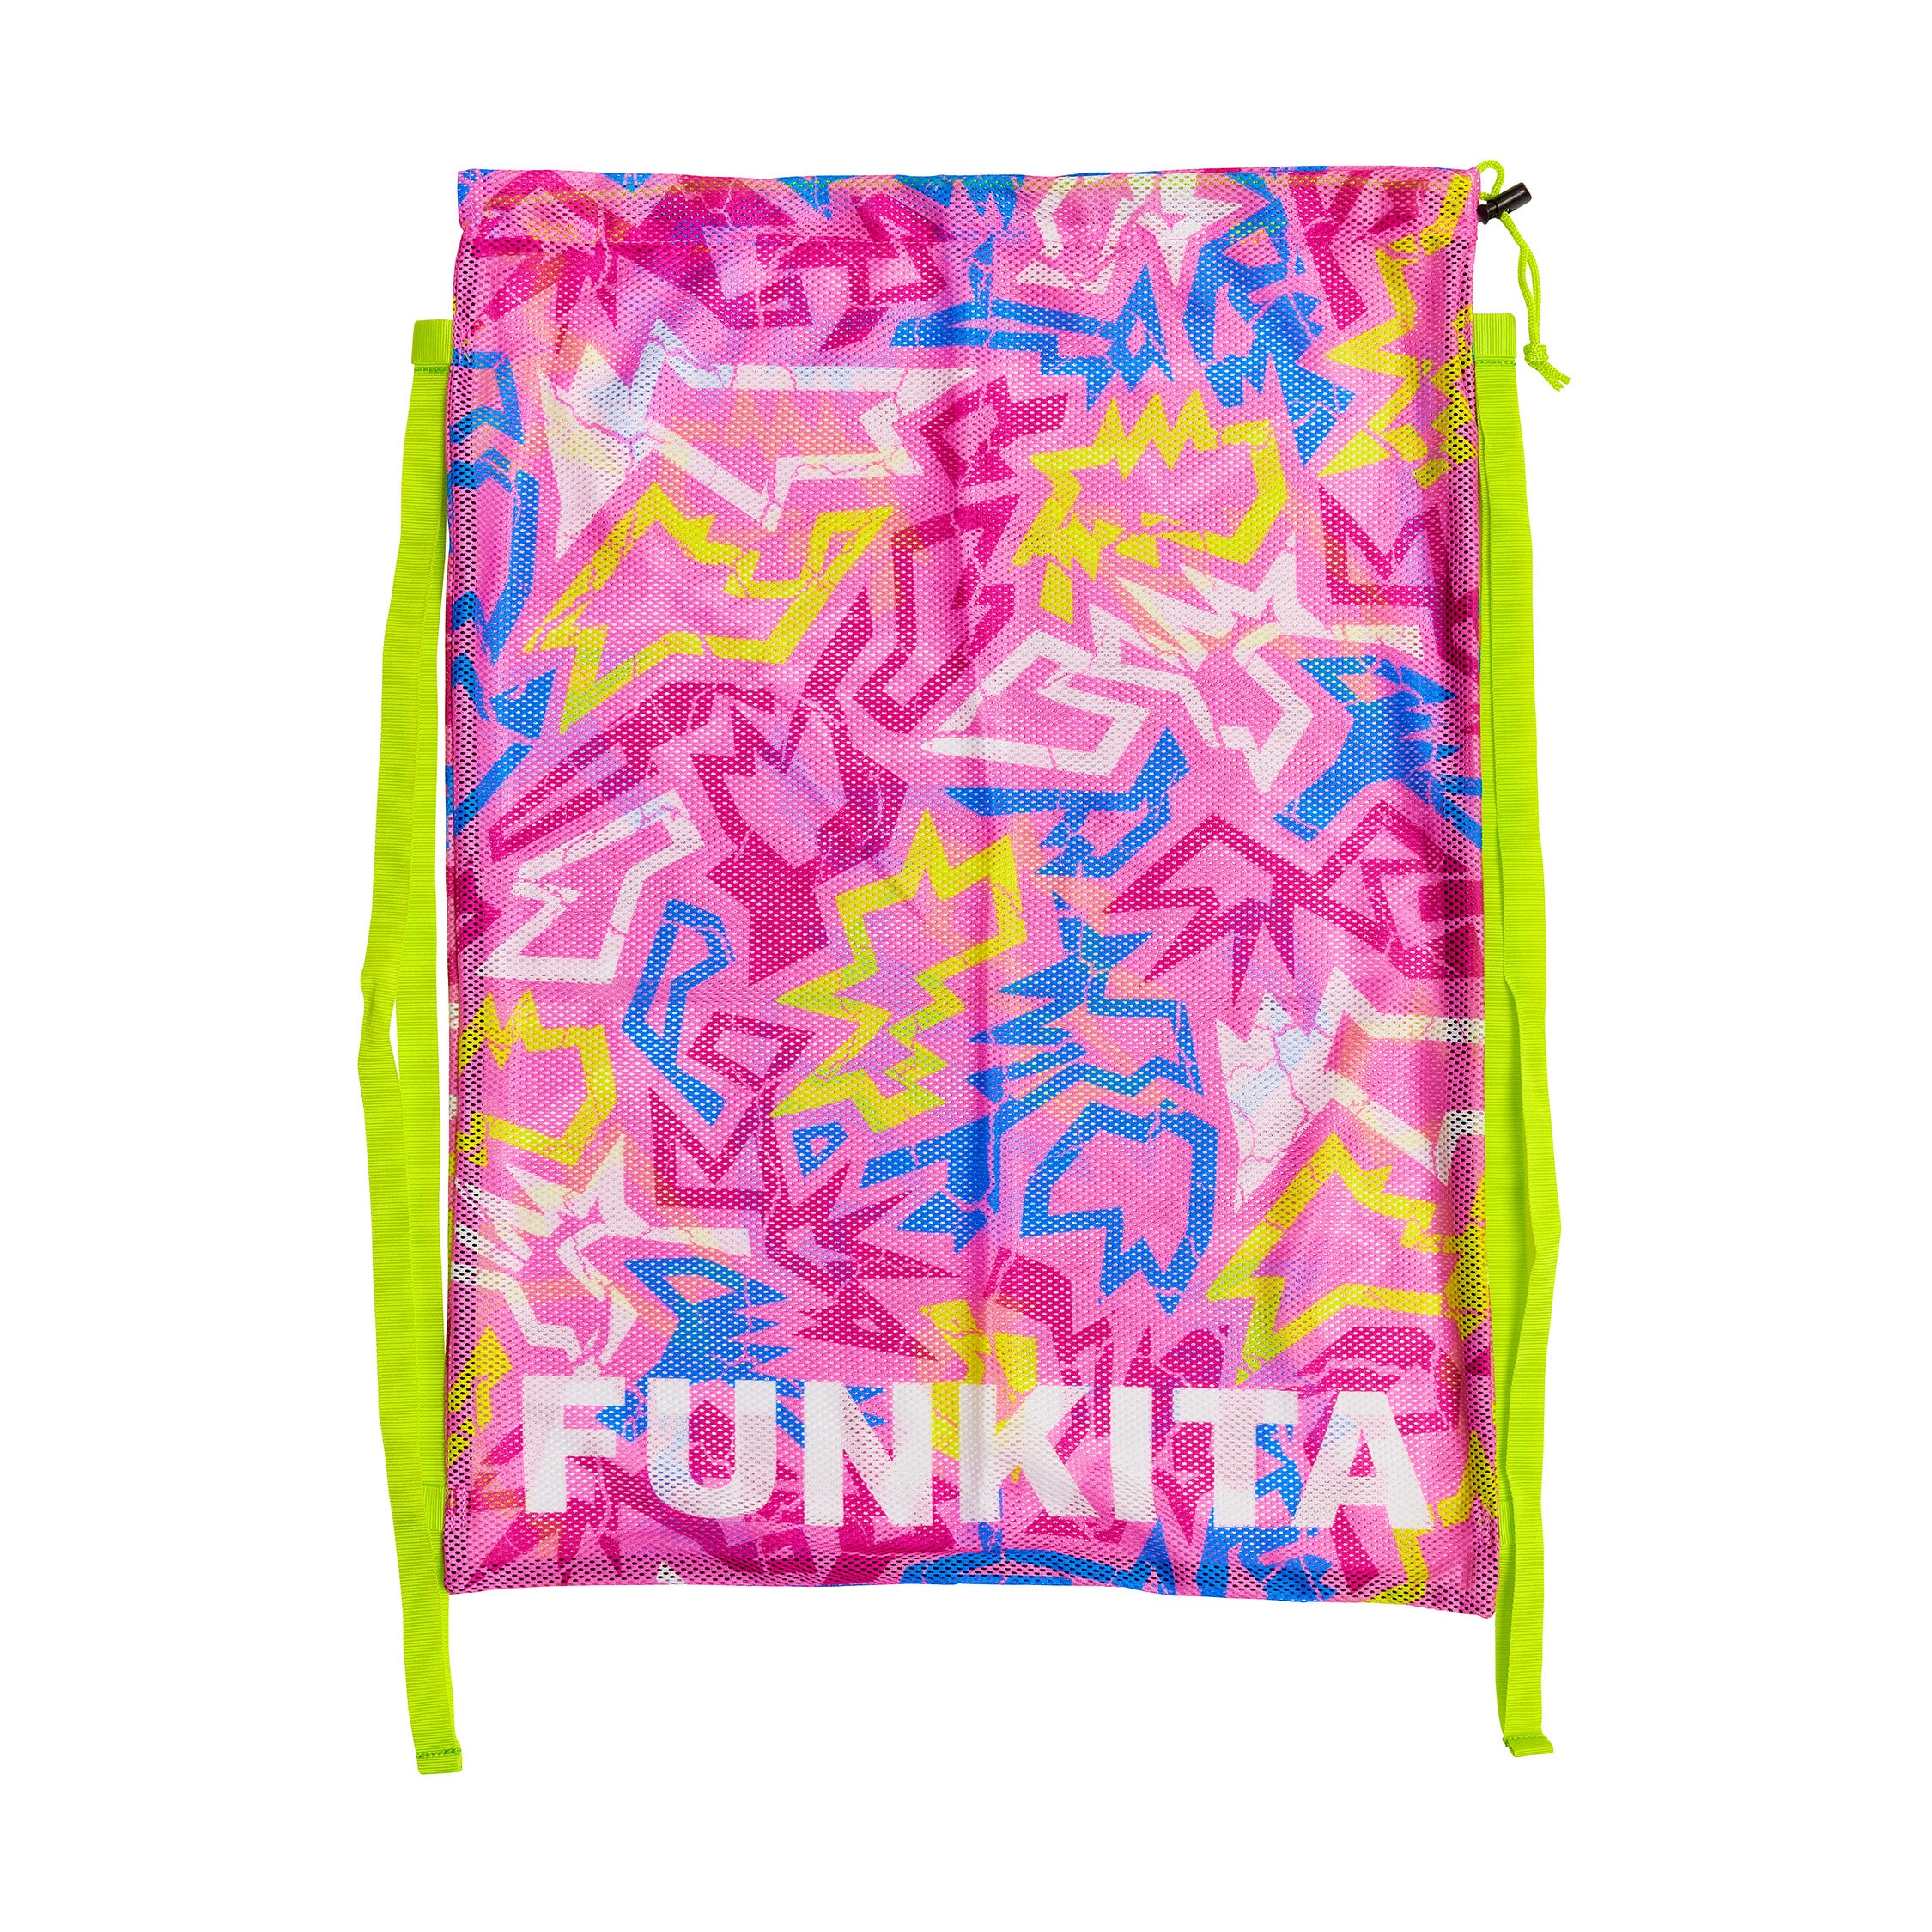 Funkita - Rock Star - Mesh Gear Bag